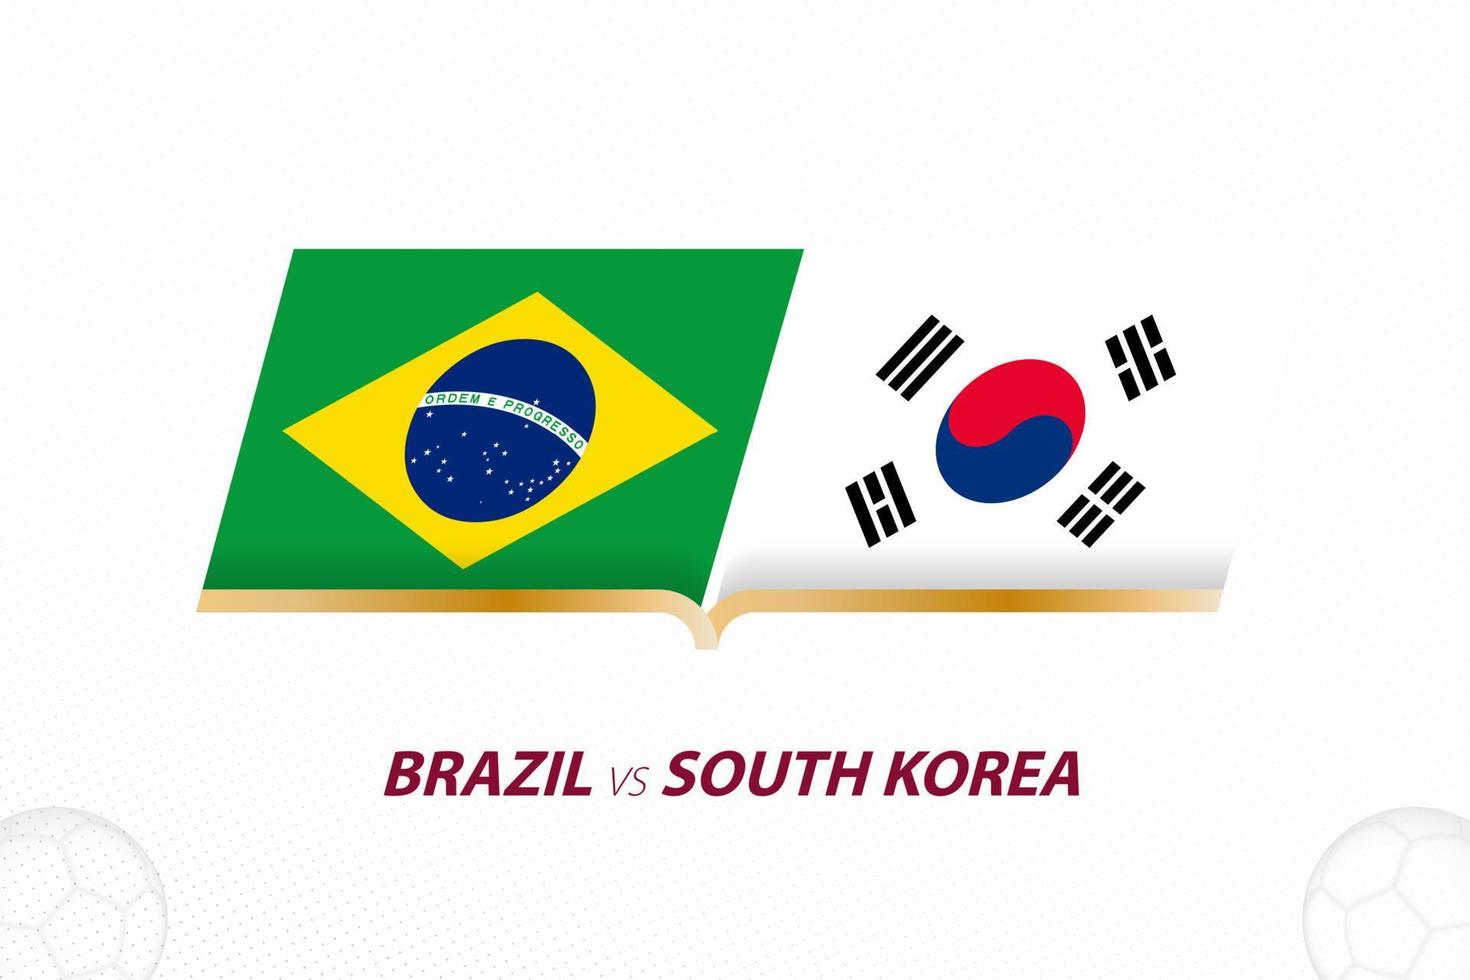 brasilien gegen südkorea im fußballwettbewerb, runde von 16. versus symbol auf fußballhintergrund. vektor